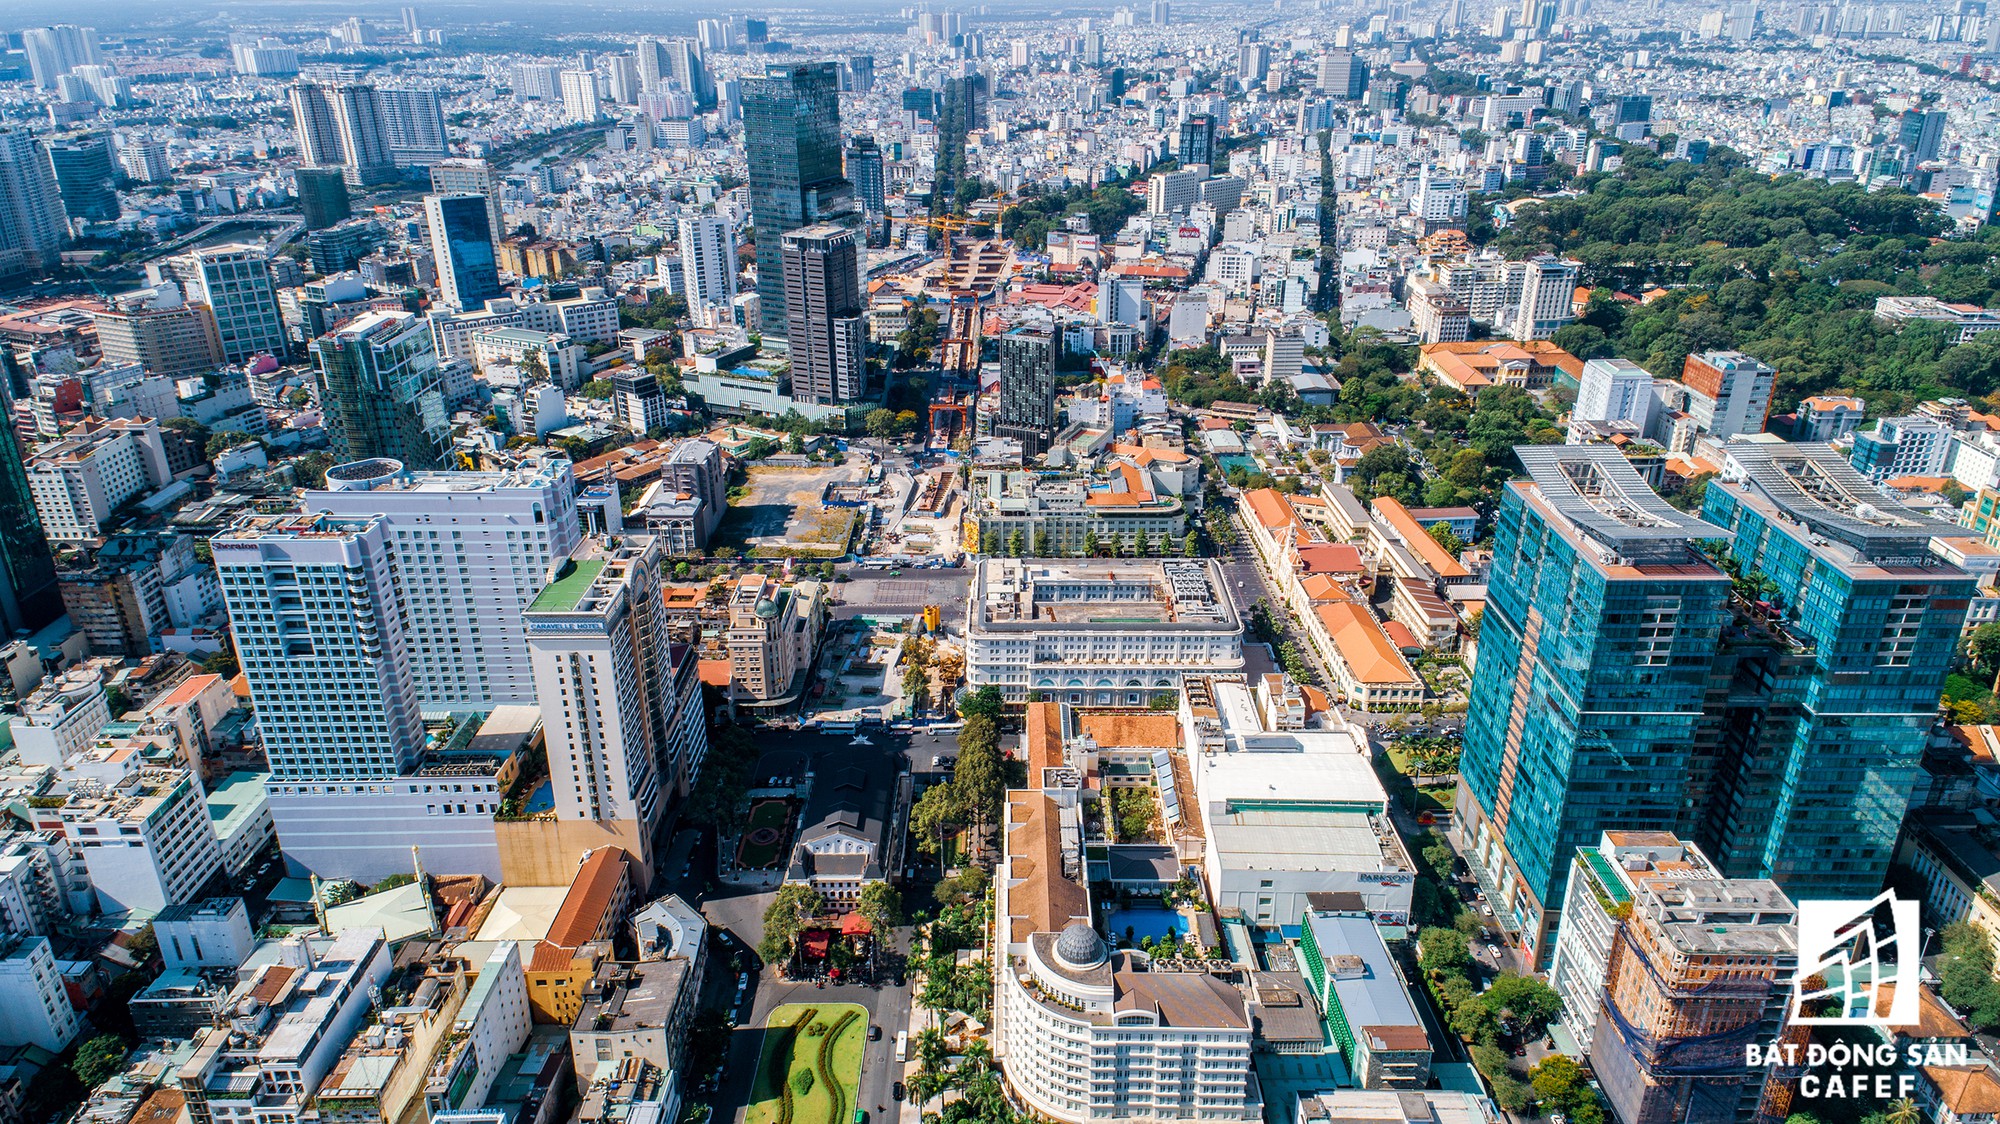 Toàn cảnh con đường có giá bất động sản đắt đỏ nhất Việt Nam, lên tới 2 tỷ đồng một m2 - Ảnh 12.